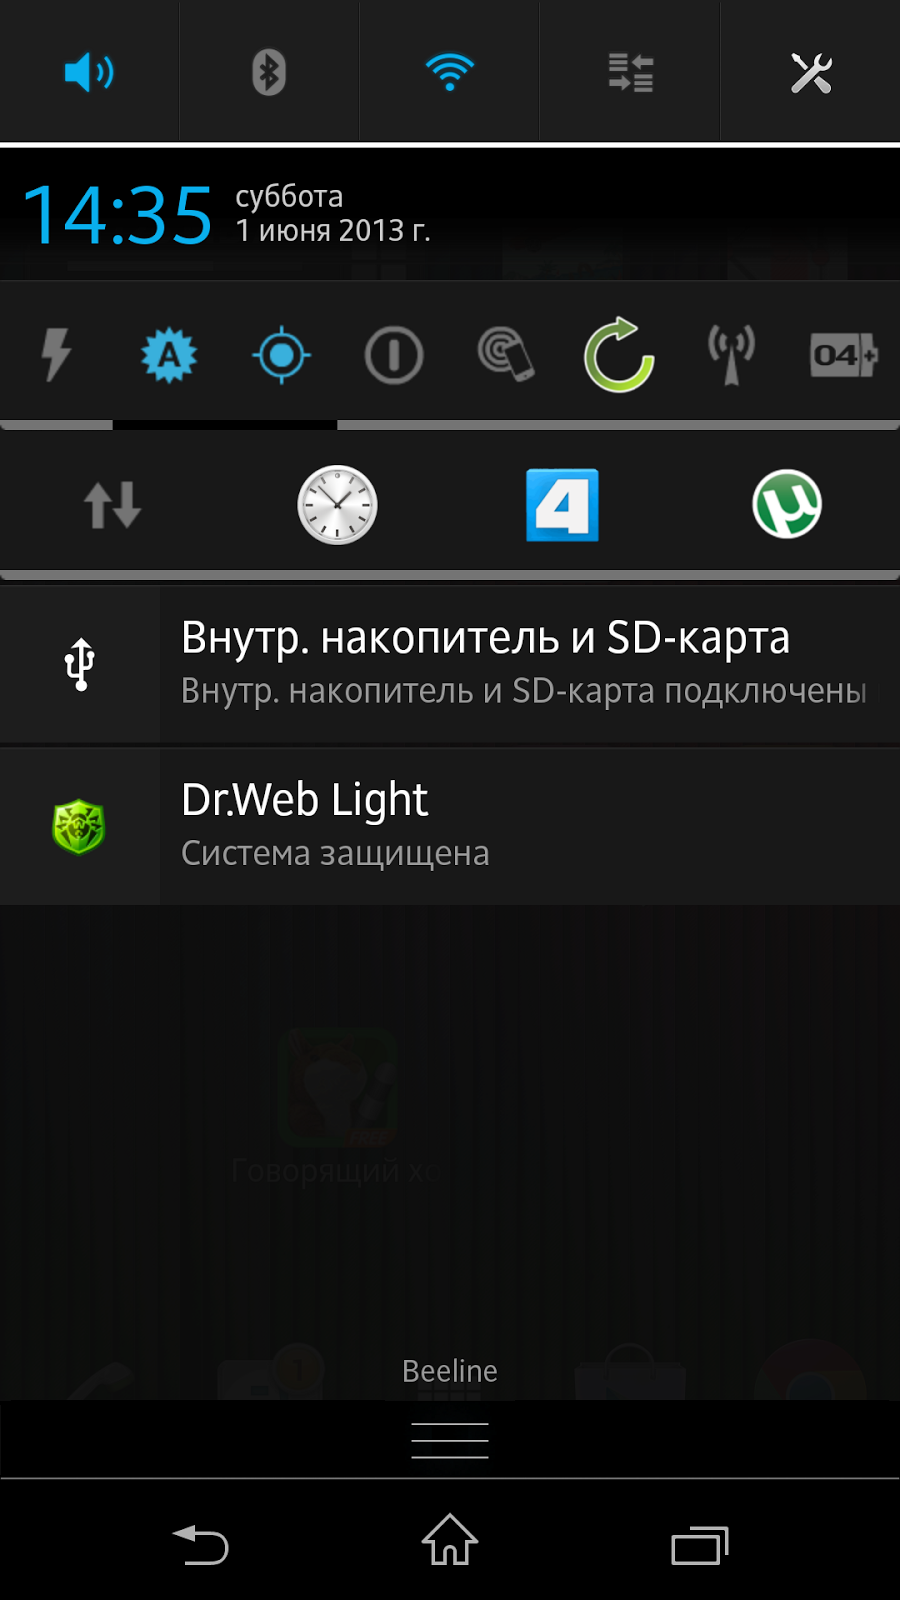 Значки в шторке уведомлений. Android панель уведомлений. Шторка уведомлений андроид. Значки в шторке уведомлений андроид. Иконки в шторке уведомлений.